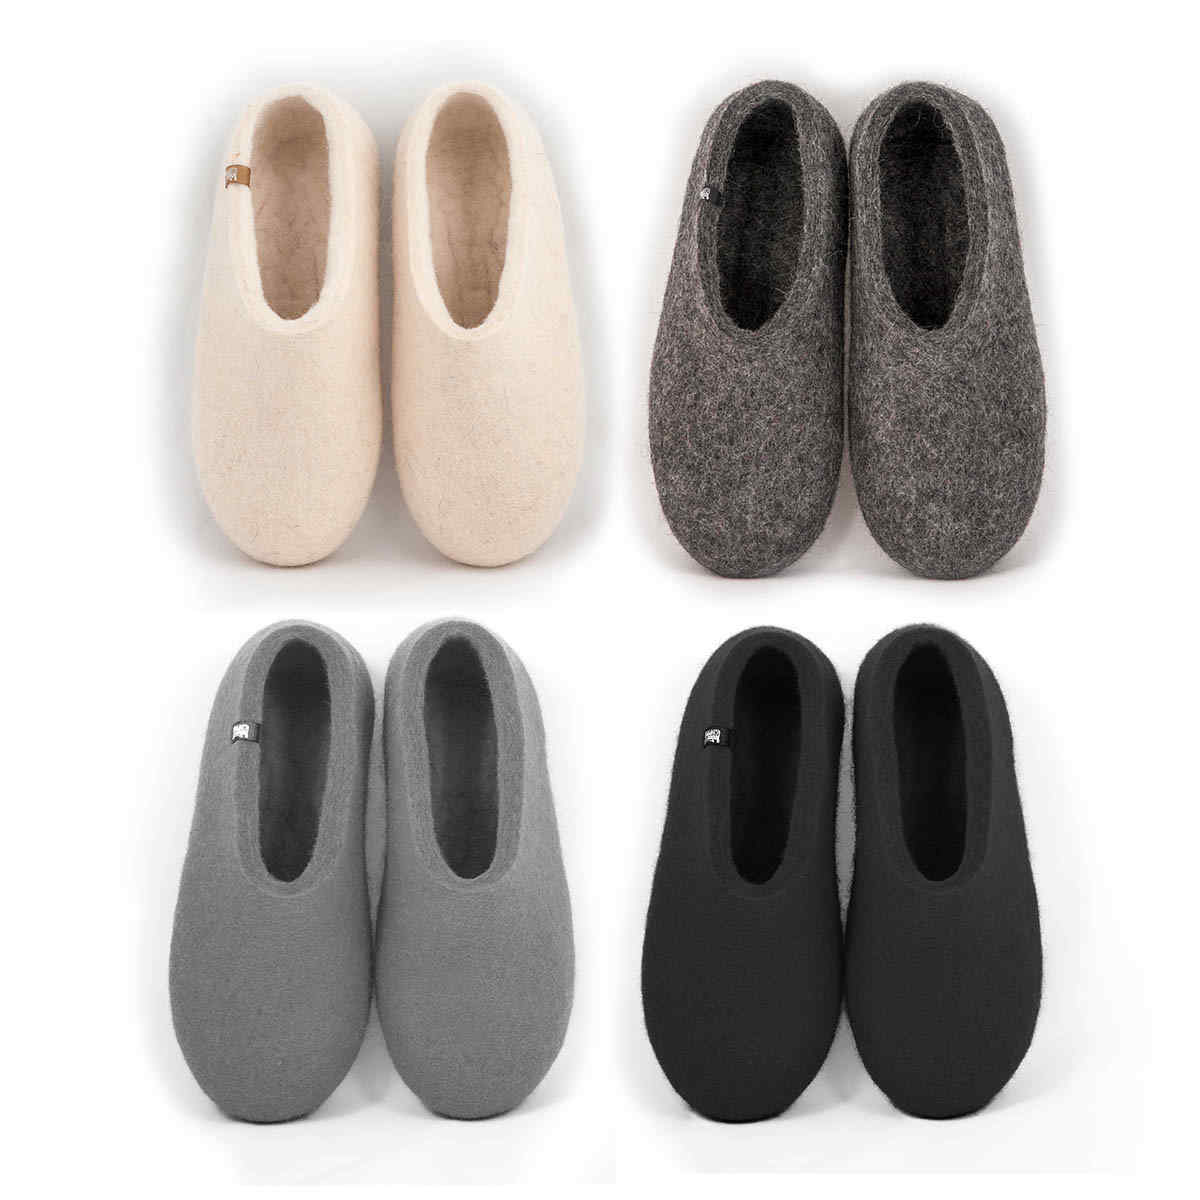 white / grey / black wool slippers BASIC Home, Women's Slippers, BASIC